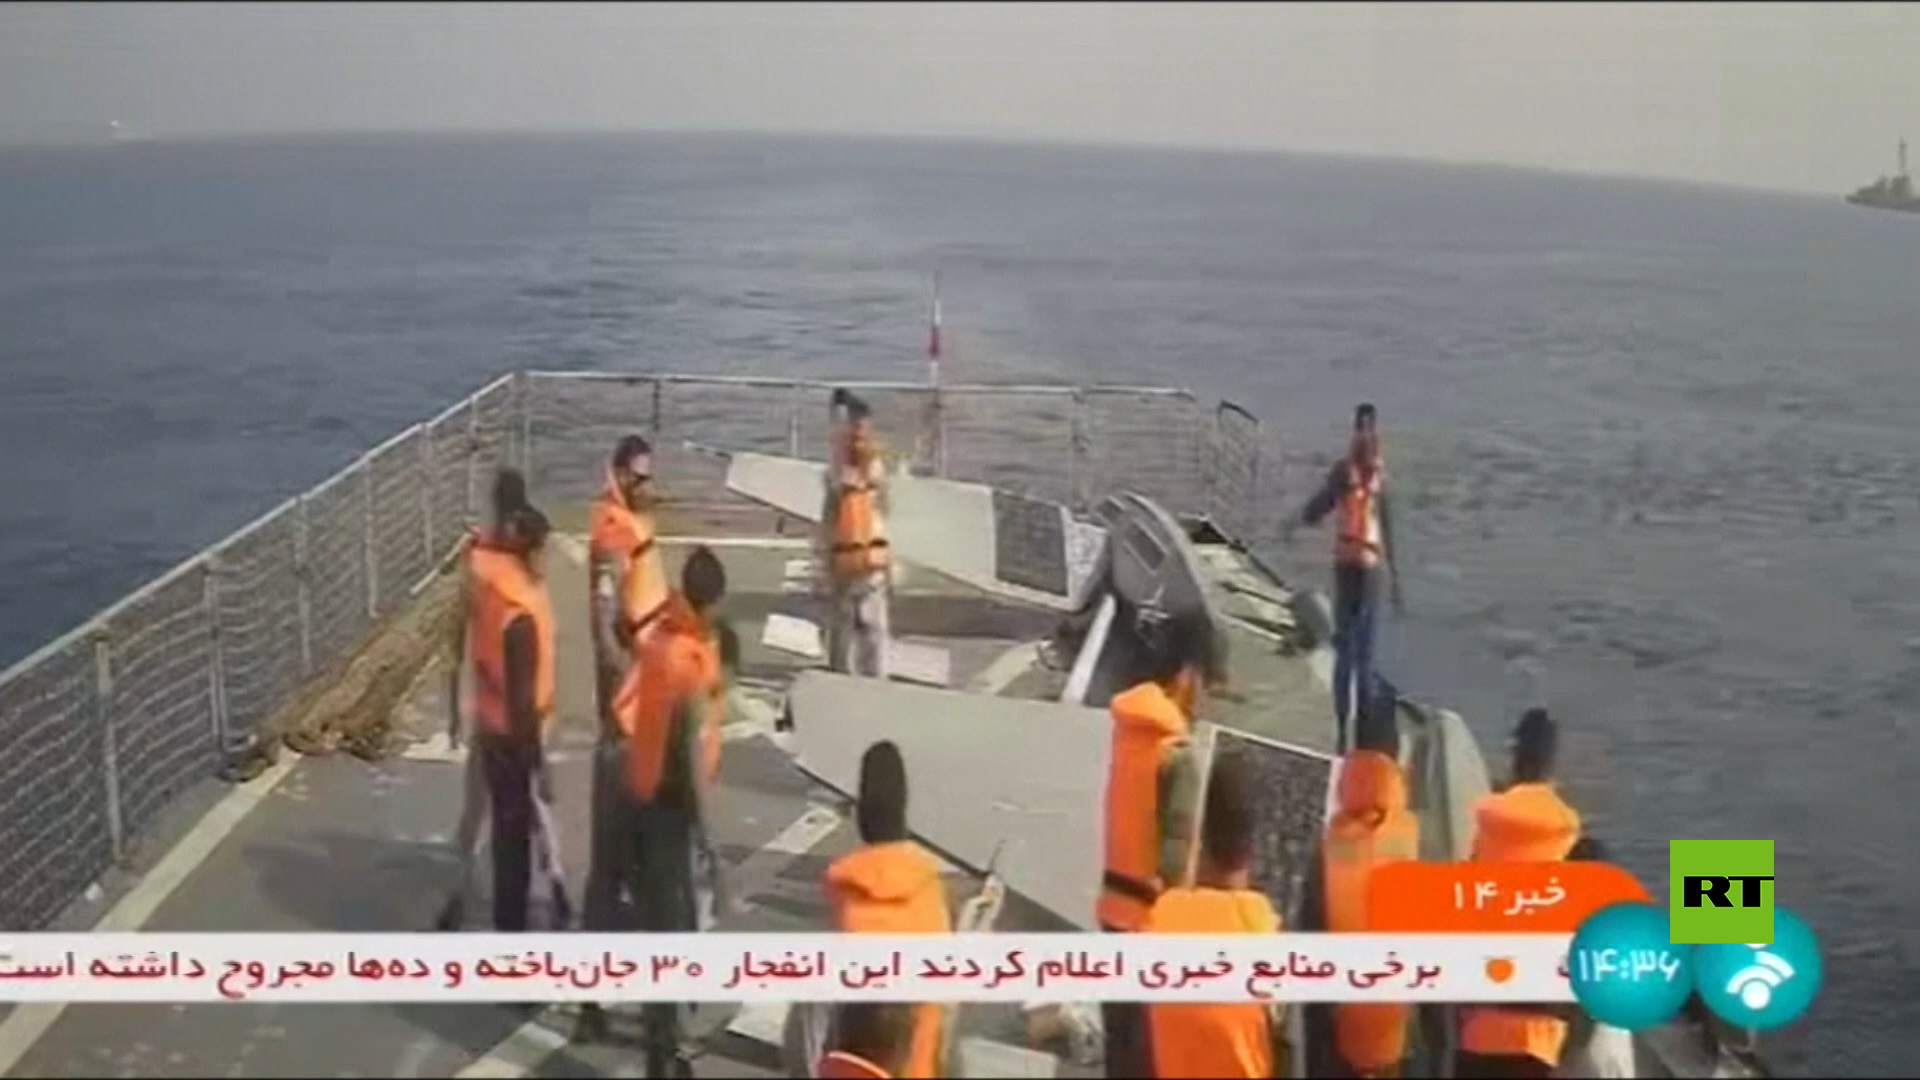 إيران تعرض فيديو لزورقين مسيرين أمريكيين محتجزين في البحر الأحمر